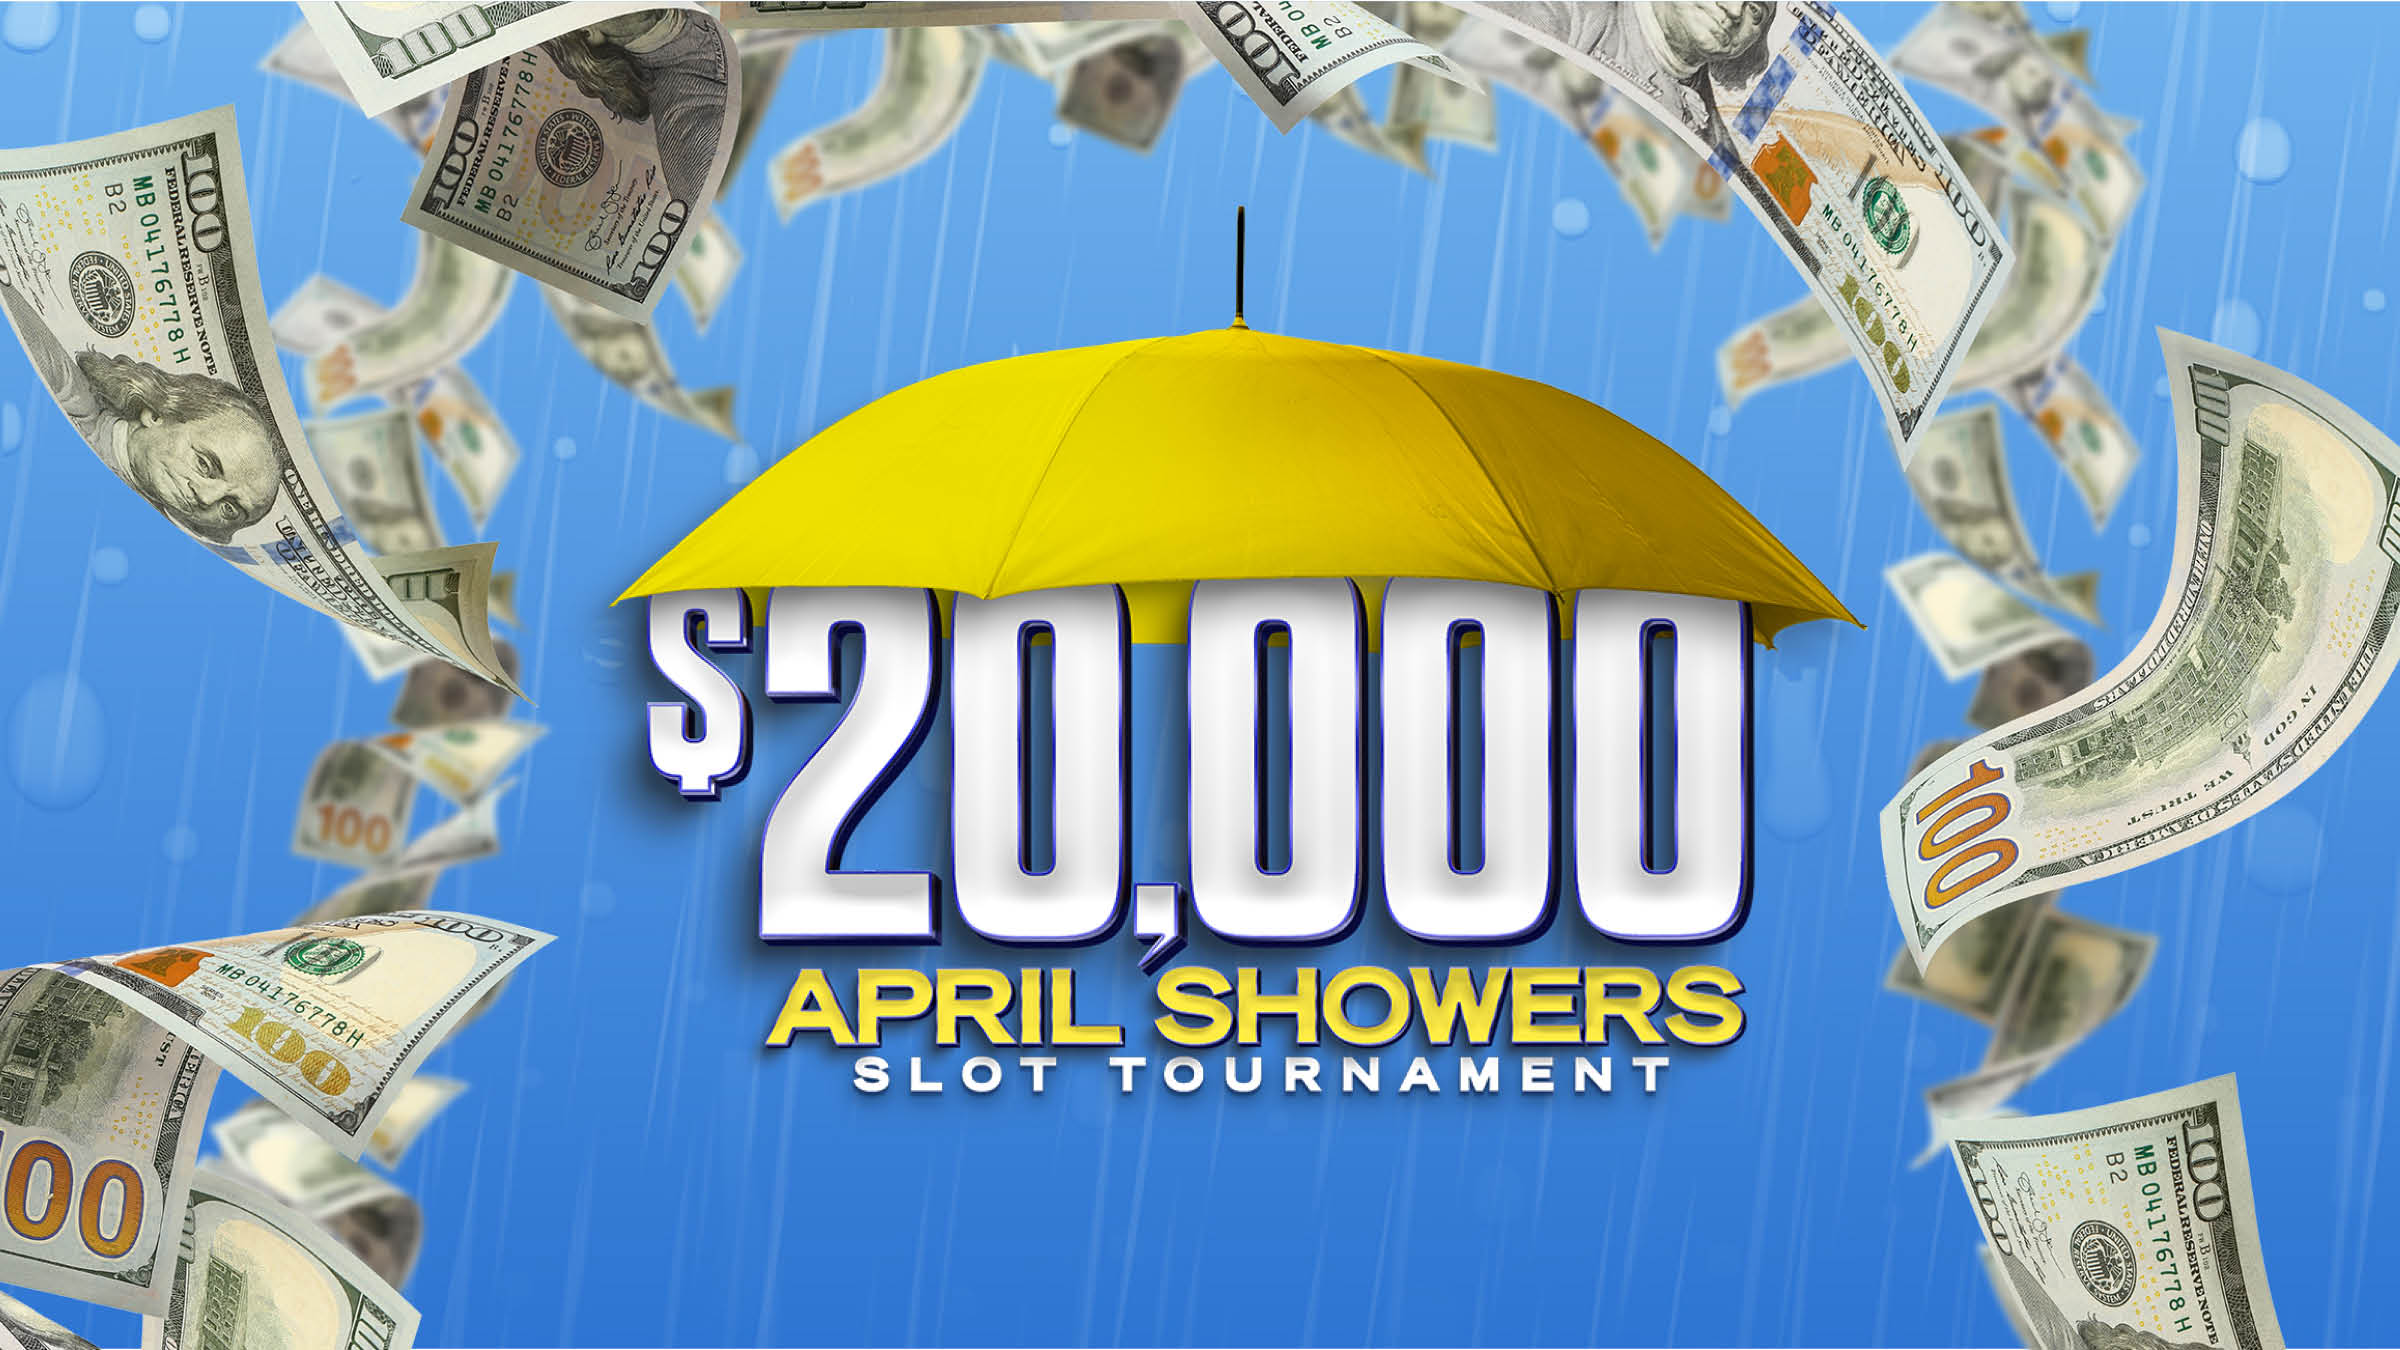 $20,000 April Showers Slot Tournament